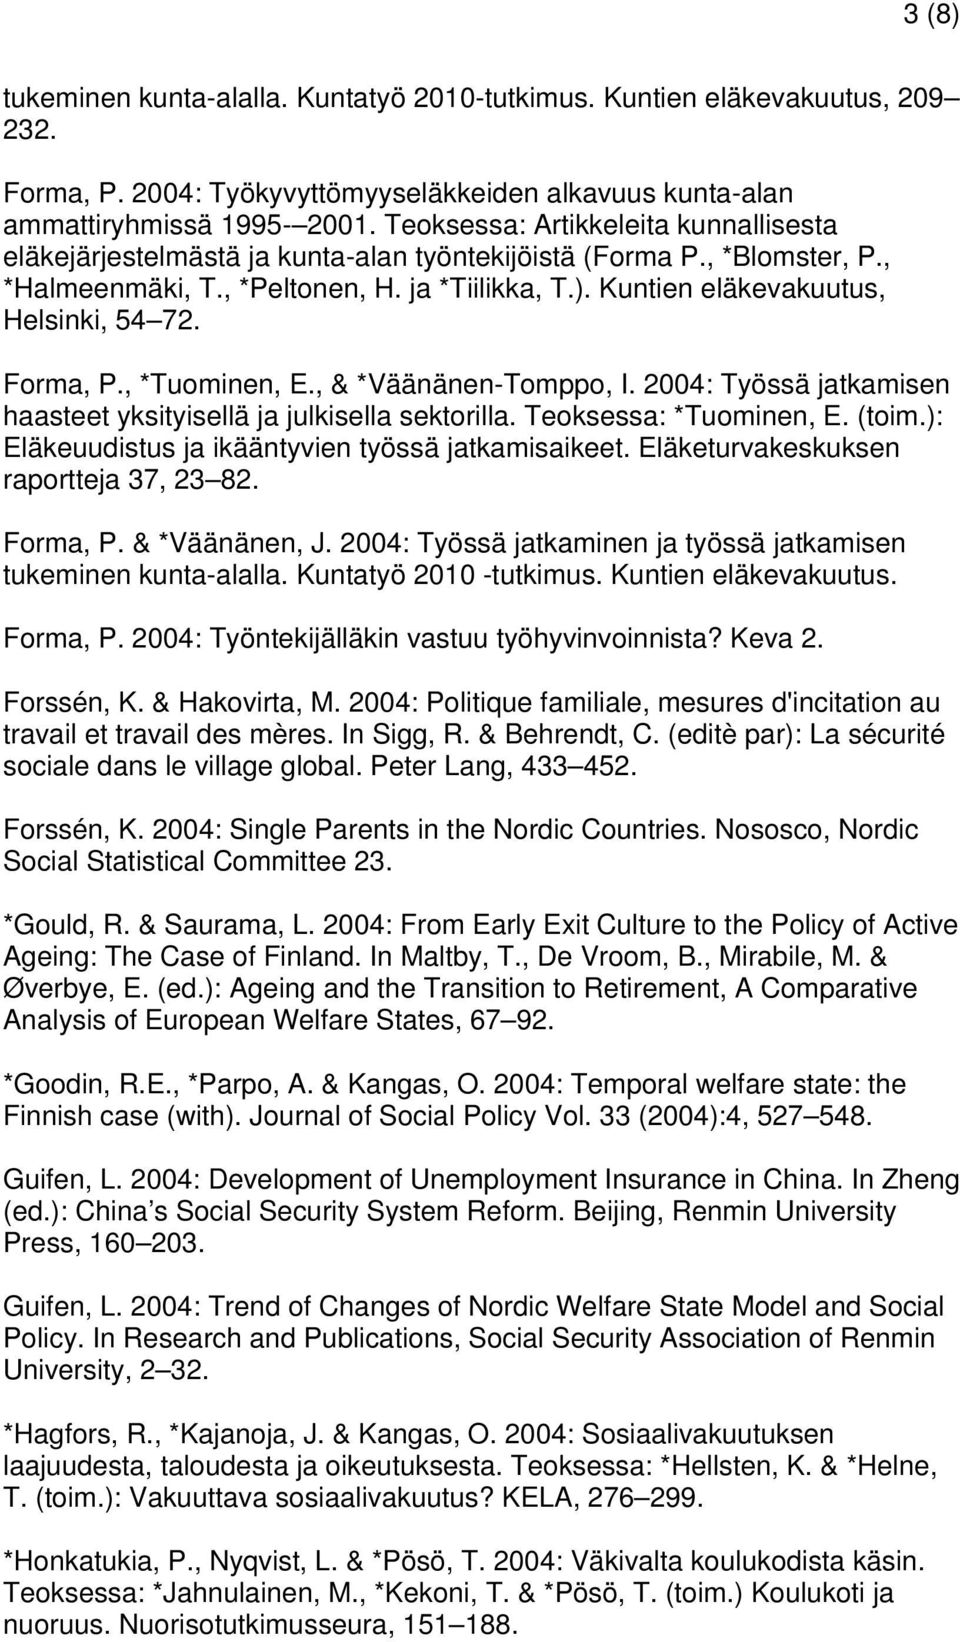 Kuntien eläkevakuutus, Helsinki, 54 72. Forma, P., *Tuominen, E., & *Väänänen-Tomppo, I. 2004: Työssä jatkamisen haasteet yksityisellä ja julkisella sektorilla. Teoksessa: *Tuominen, E. (toim.